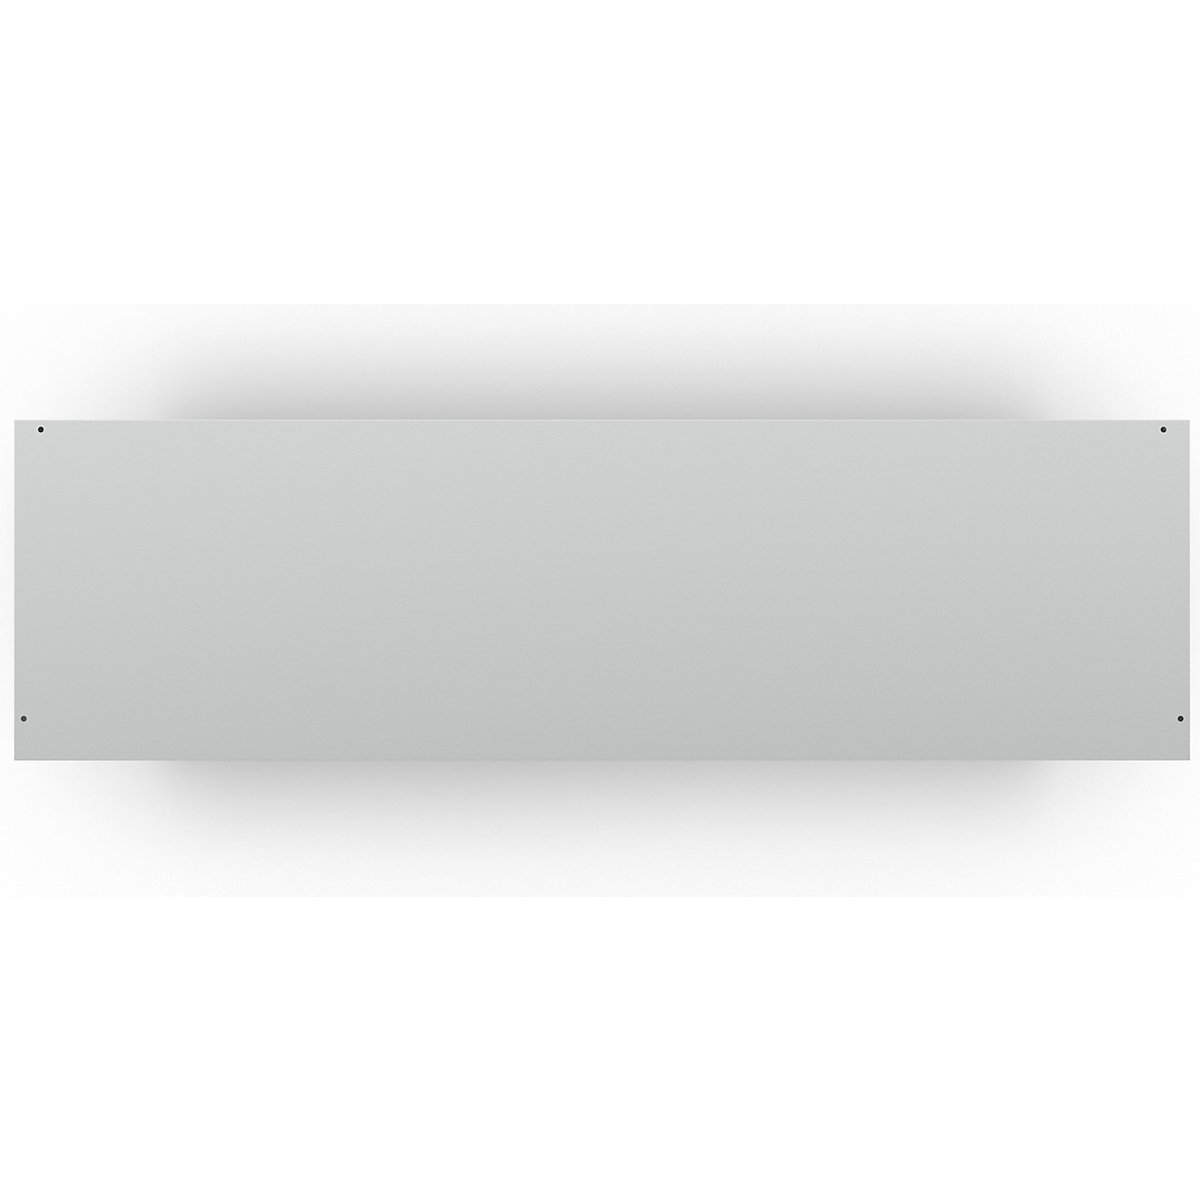 Szafa z drzwiami przesuwnymi z drzwiami z okienkiem – LISTA (Zdjęcie produktu 2)-1